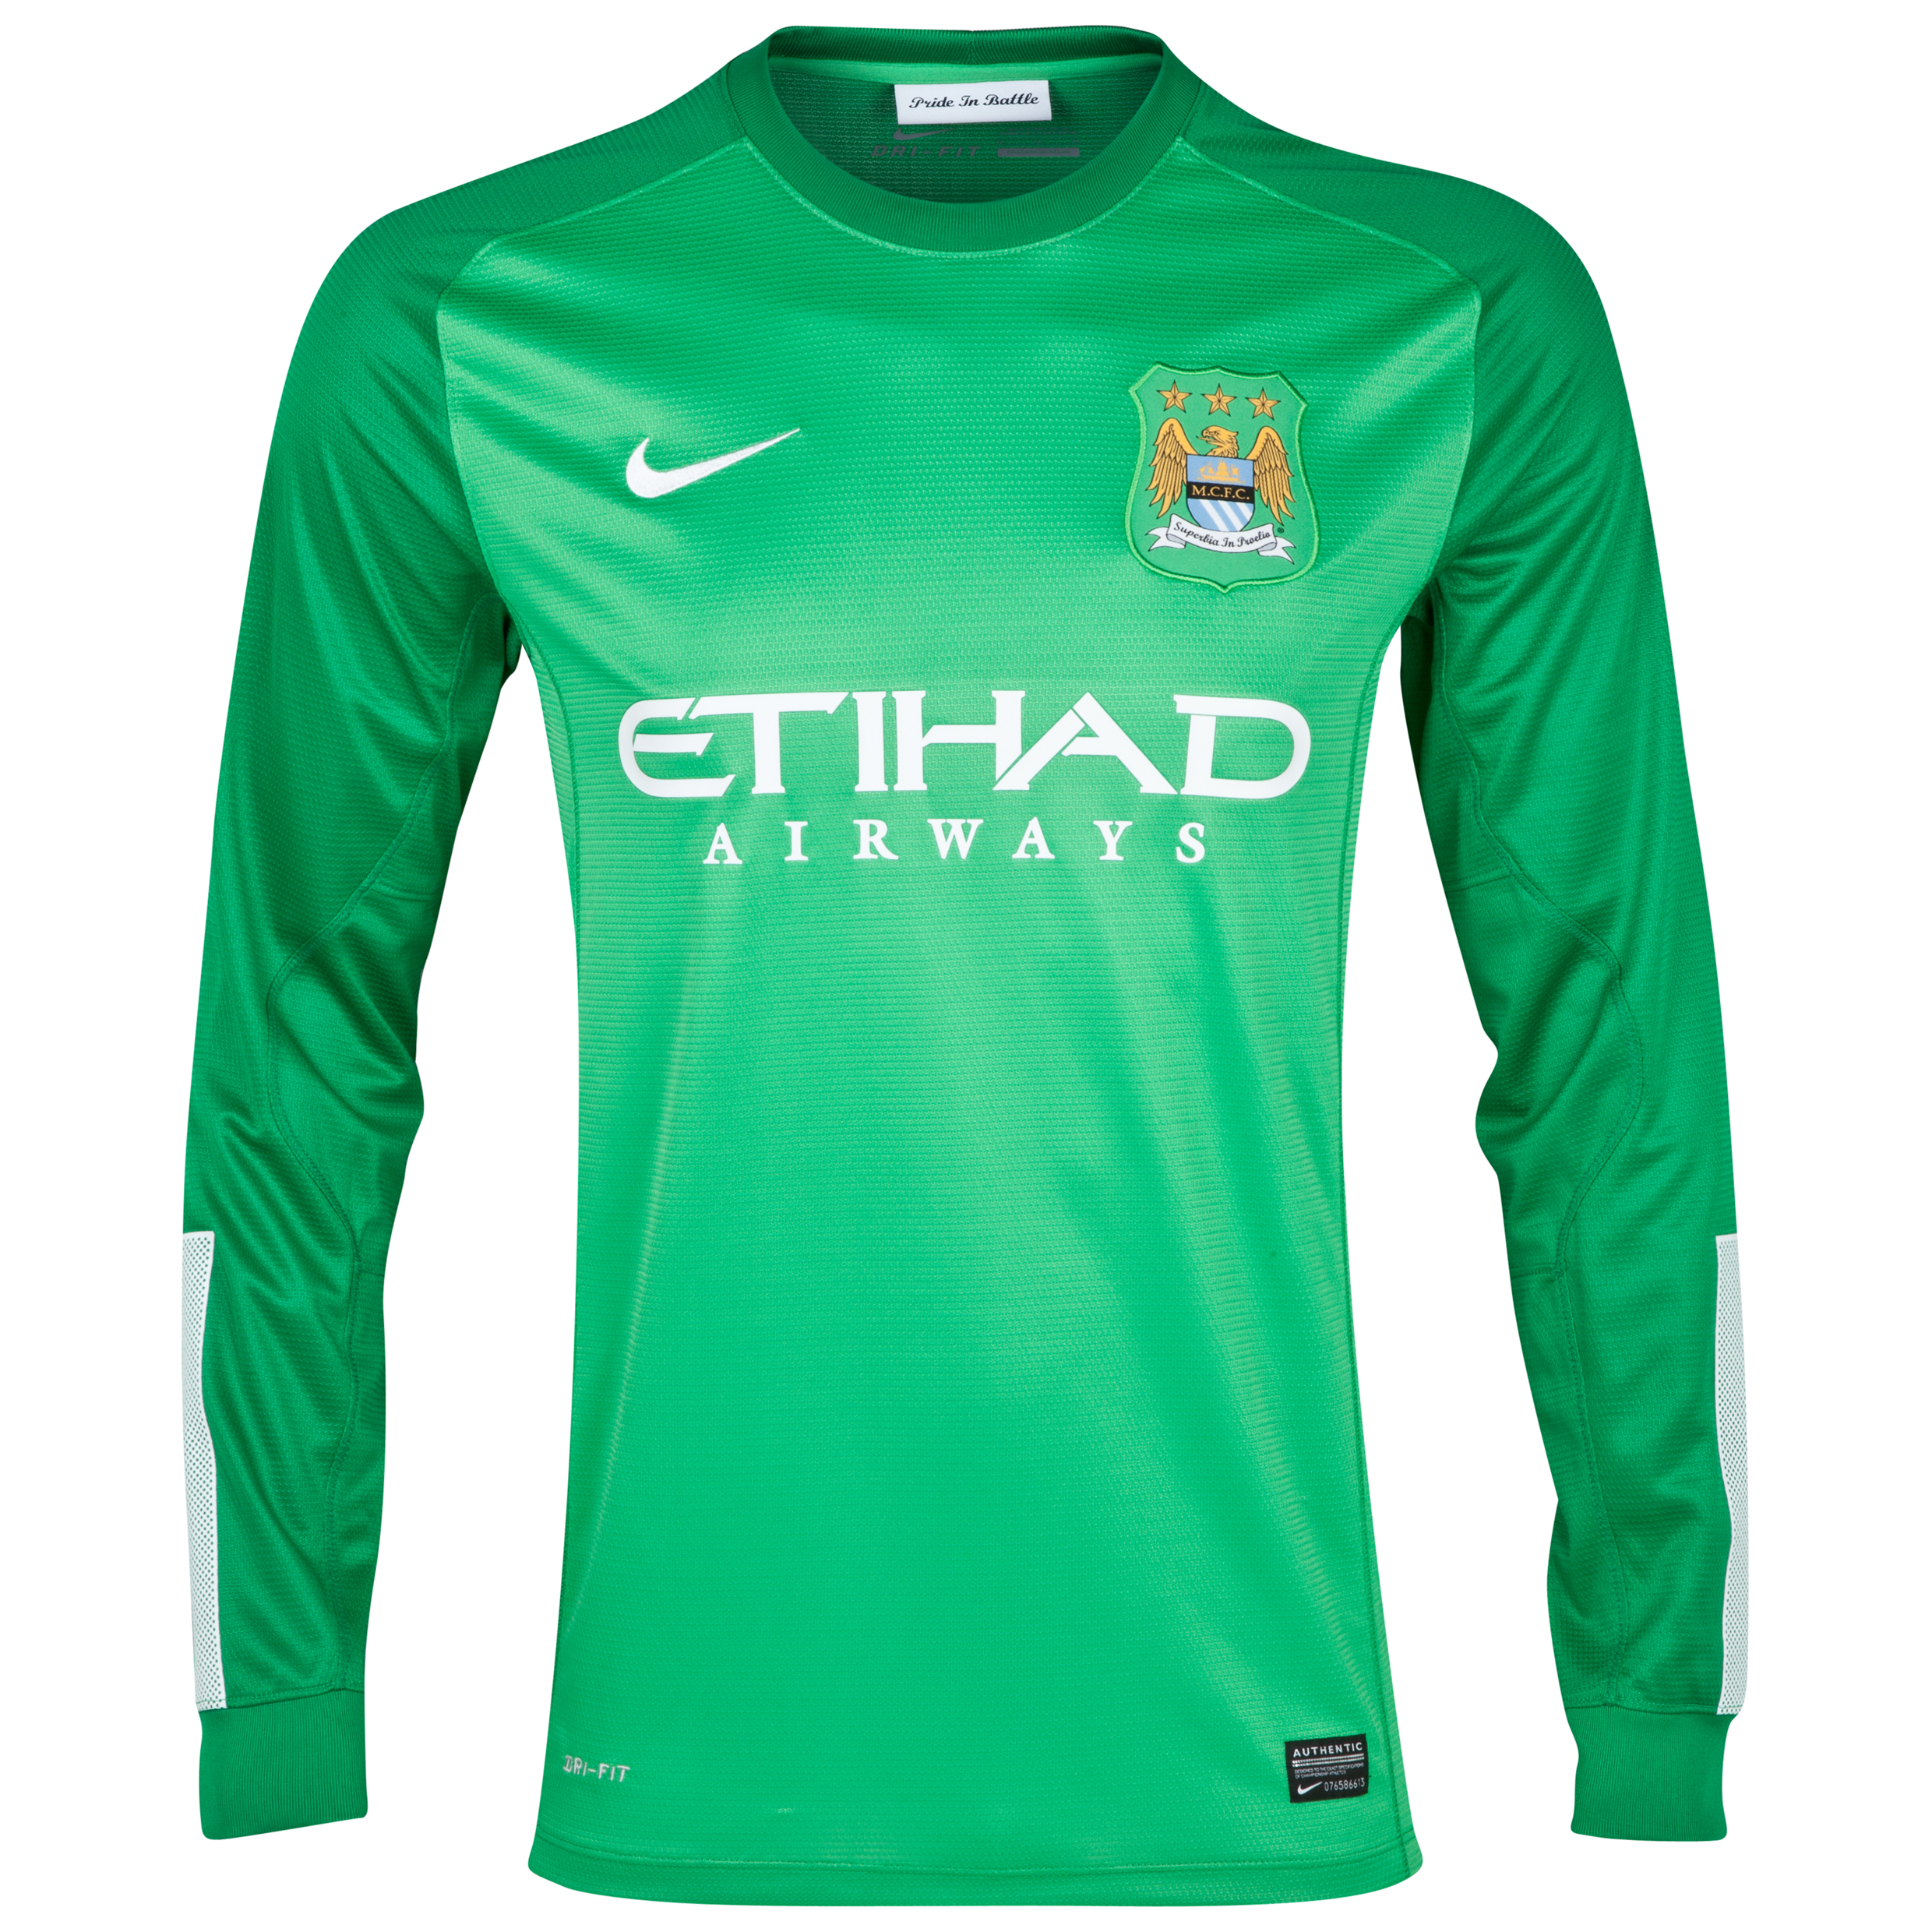 Manchester City Option 1 Goalkeeper Shirt 2013/14 - Green